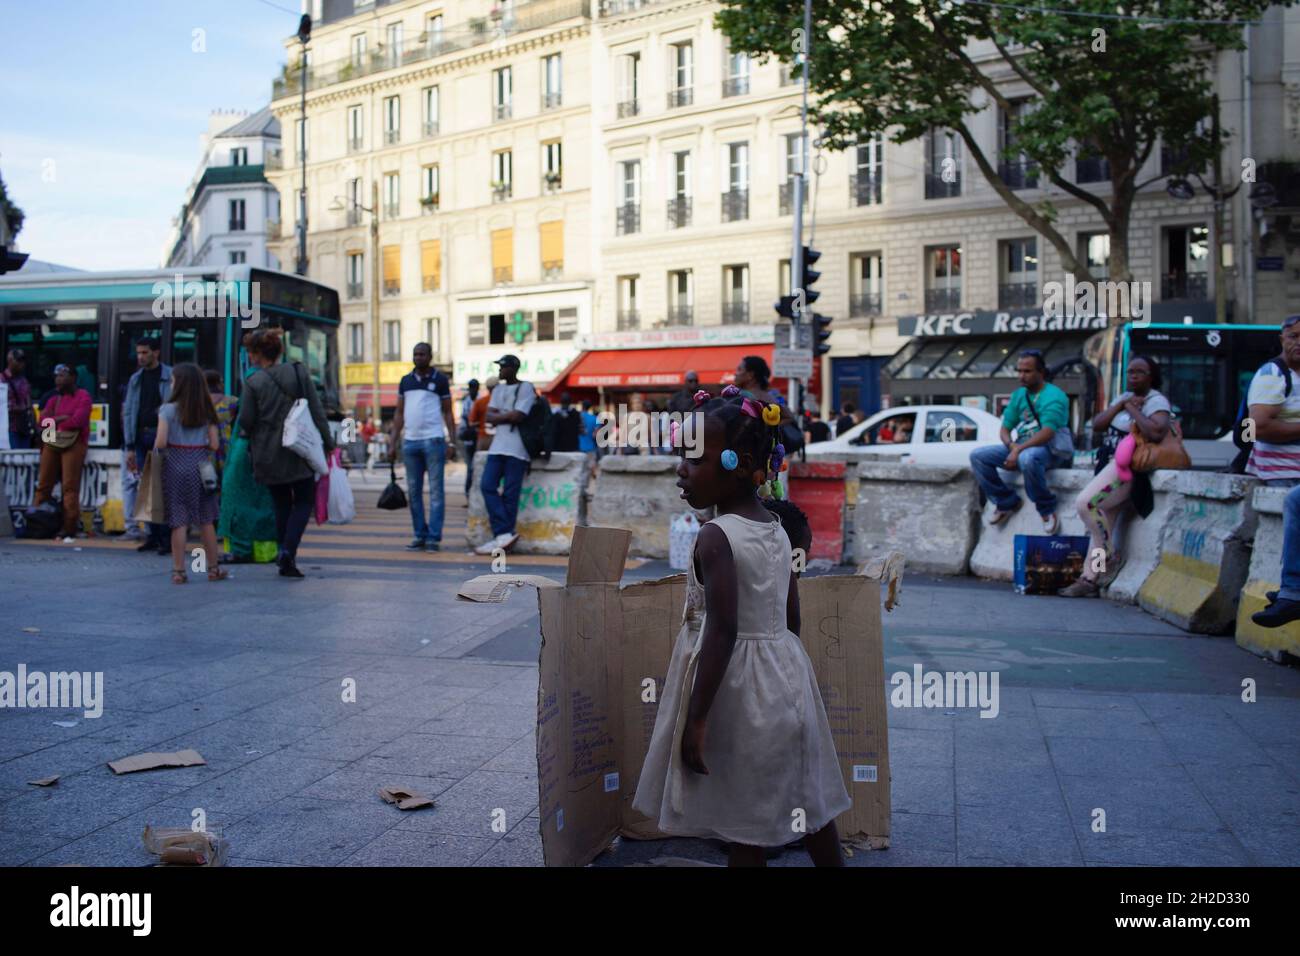 Enfant africain debout derrière une boîte de carton cassée, sur le trottoir dans le quartier mixte Afrique/Nord... - Château Rouge, Goutte d'Or, 75018 Paris, France Banque D'Images